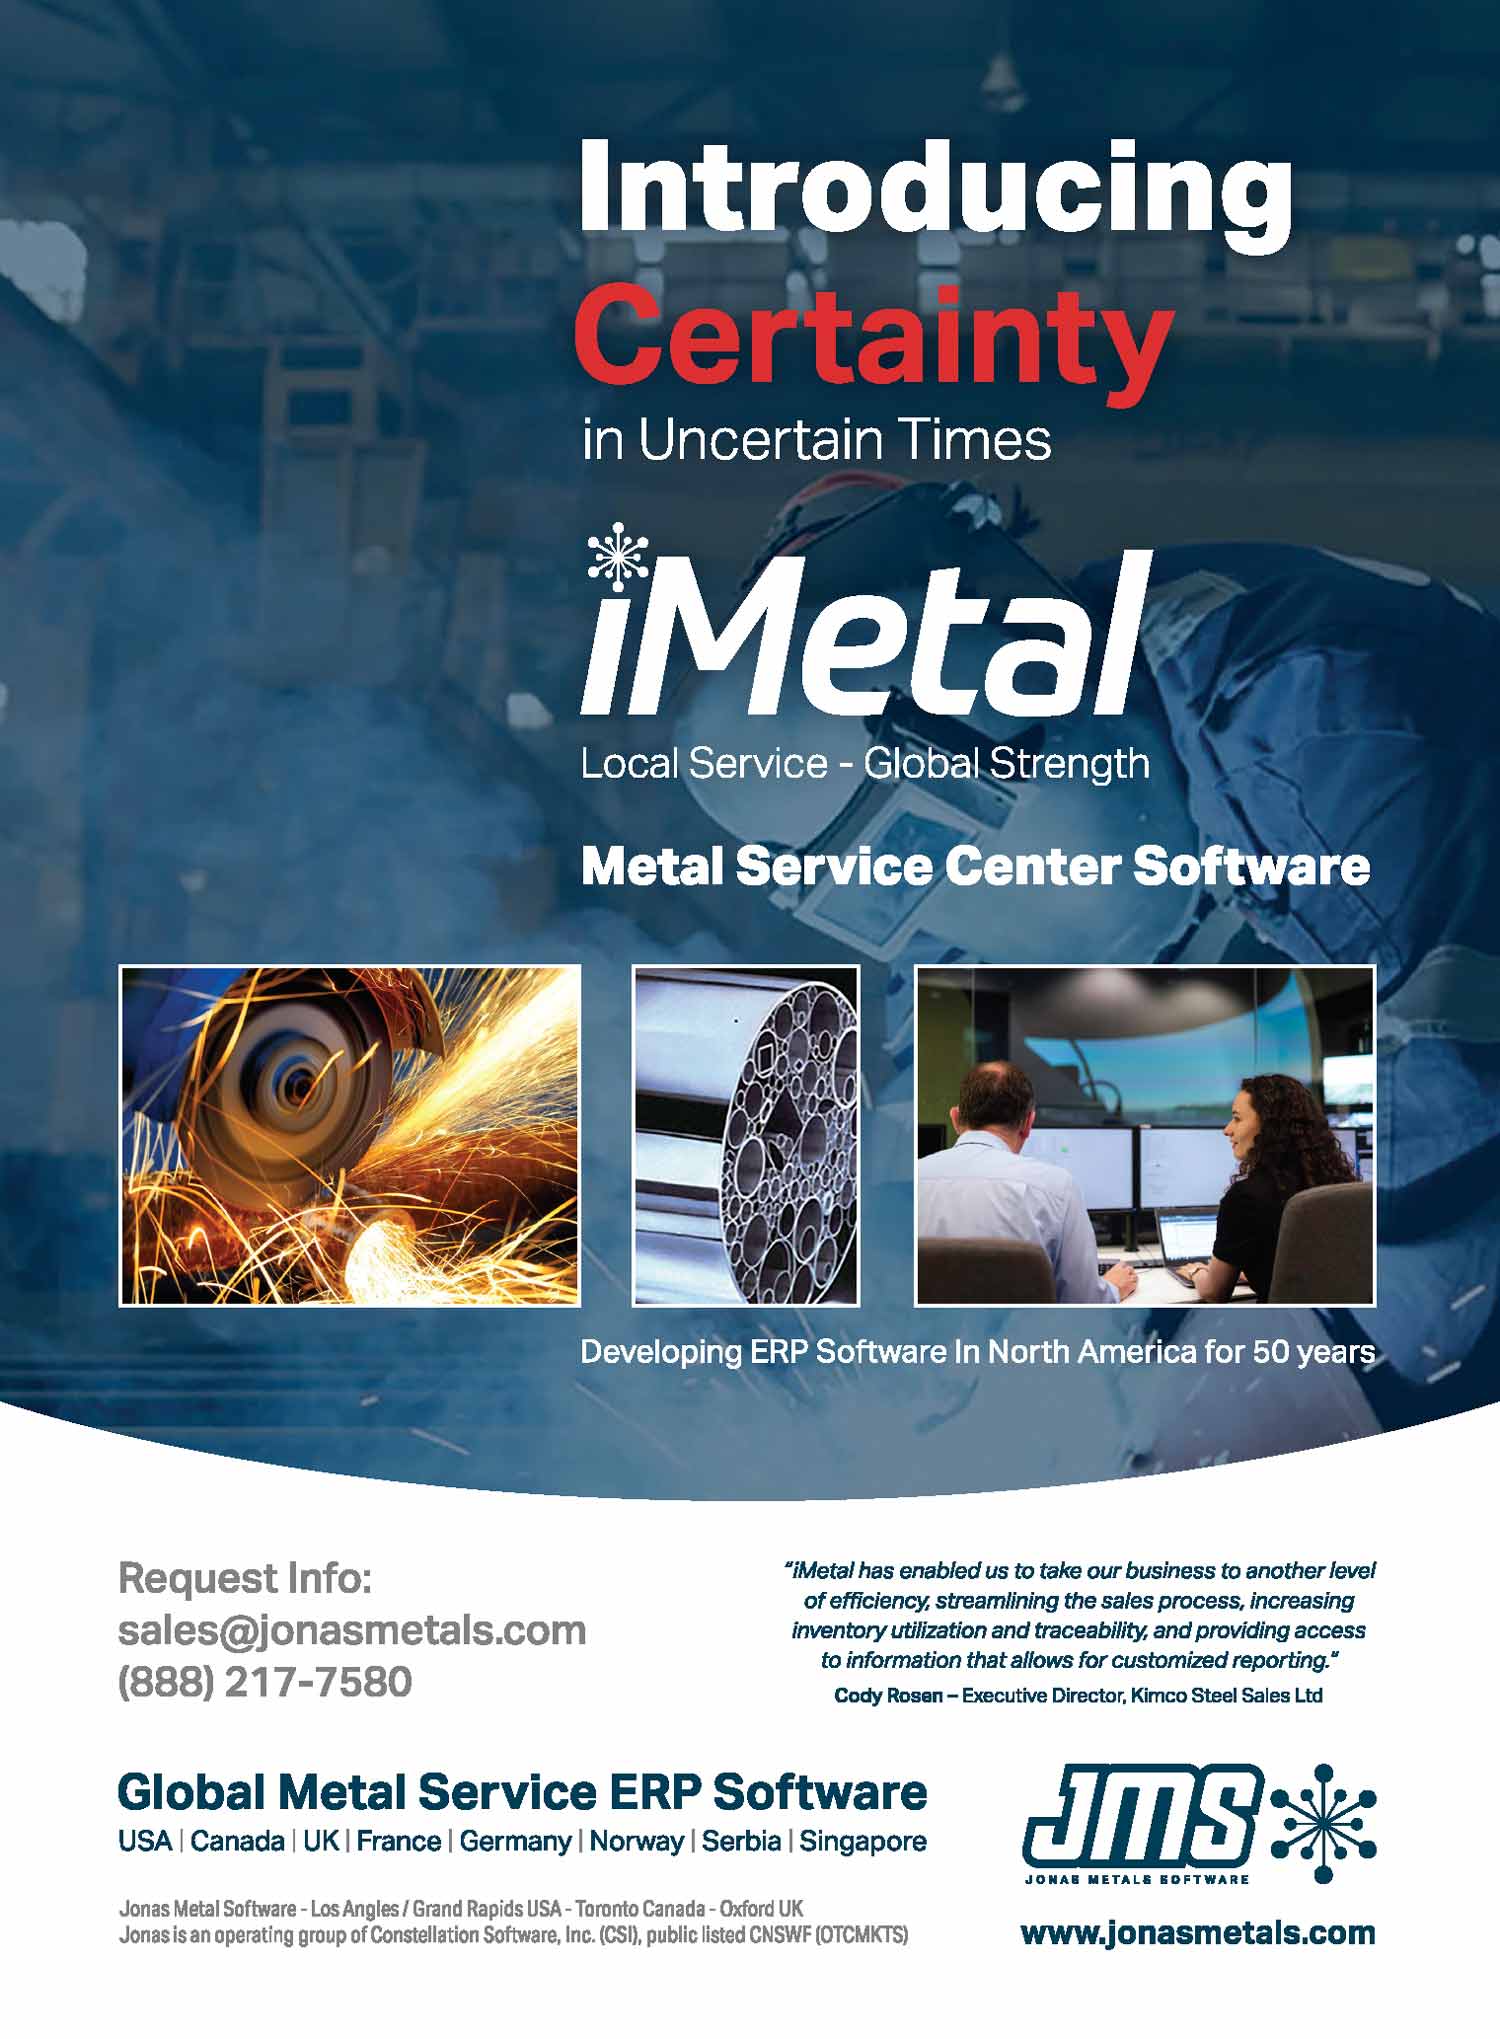 Jonas Metals Software Advertisement